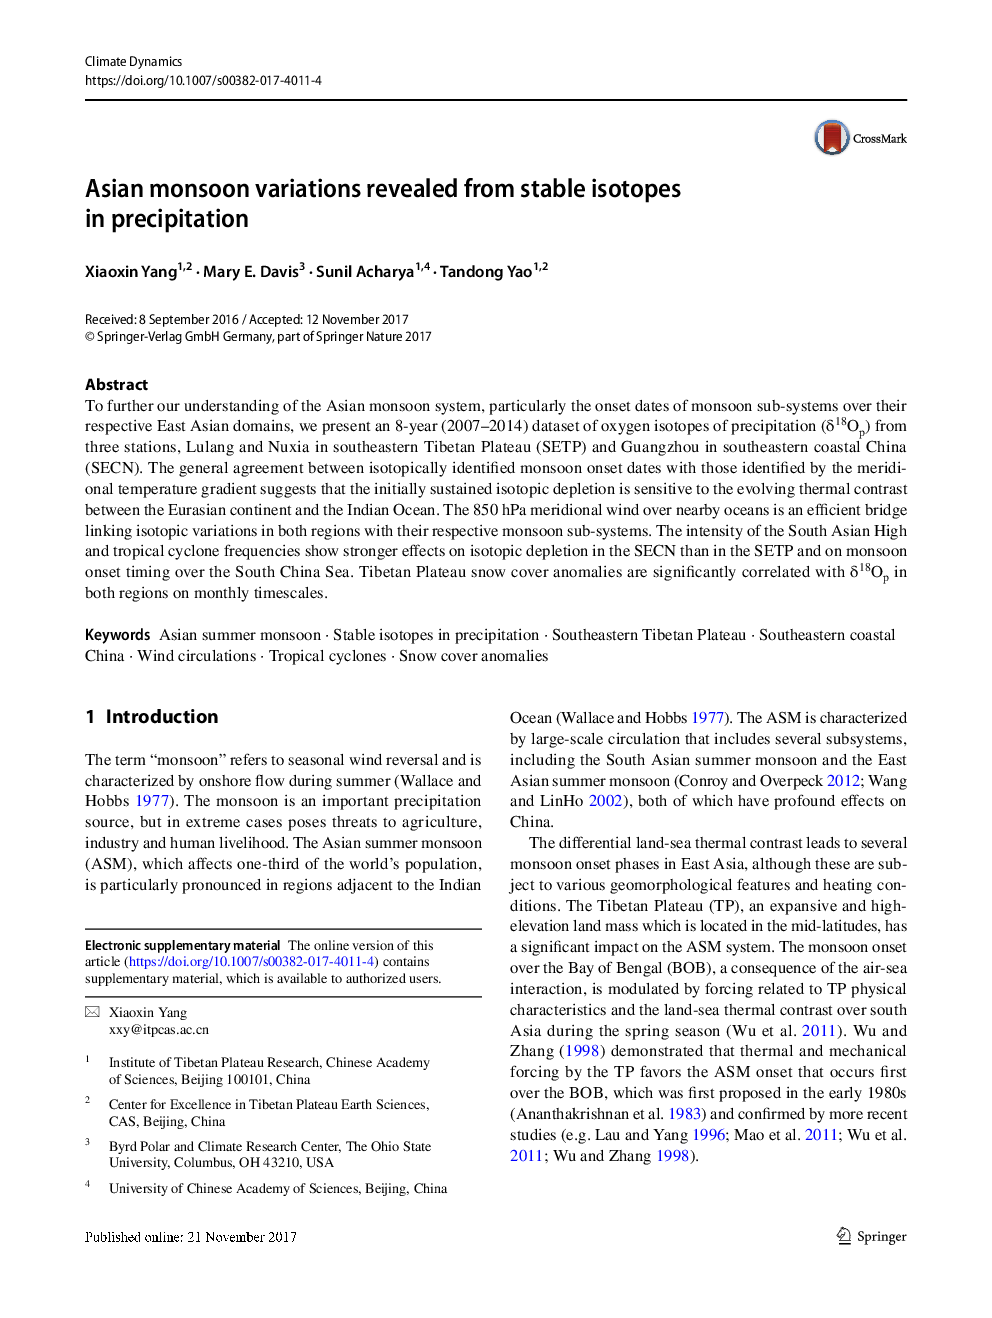 حلالیت بنزوین در سه مخلوط حلال دوتایی و بررسی تعاملات بین مولکولی با شبیه سازی دینامیکی مولکولی 